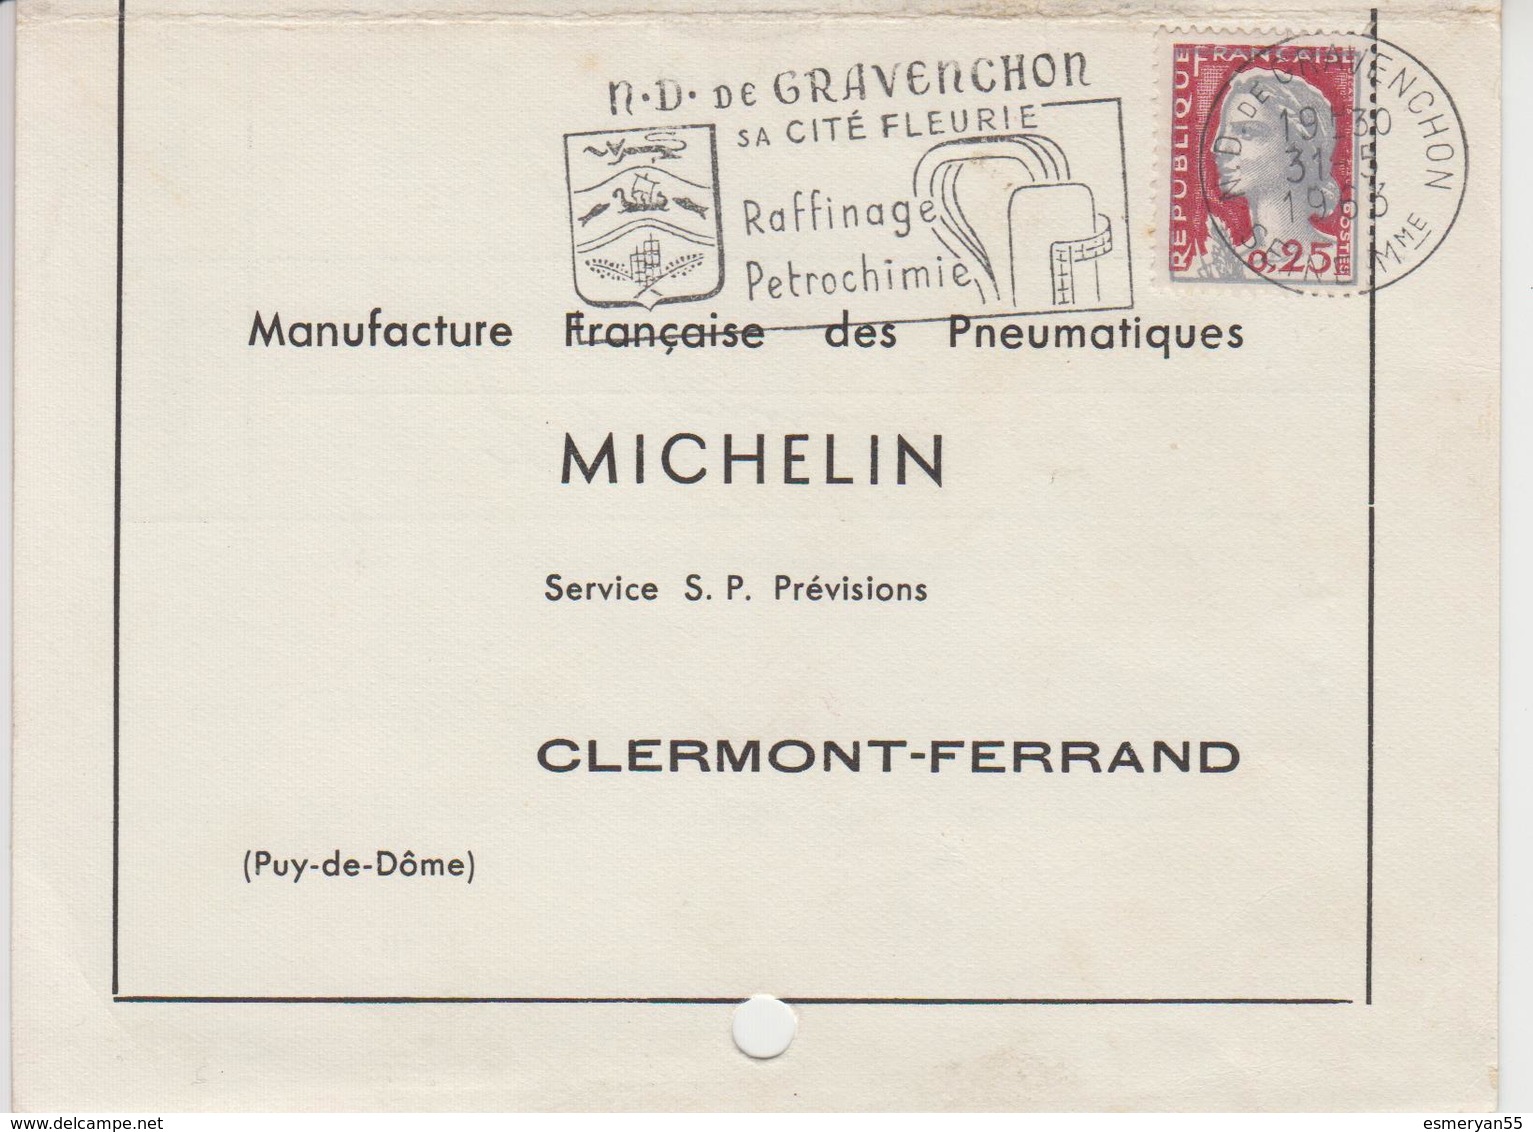 31 05 1963 - NOTRE DAME DE GRAVENCHON - Sa Cité Fleurie, Raffinage, Pétrochimie - C - Mechanical Postmarks (Advertisement)